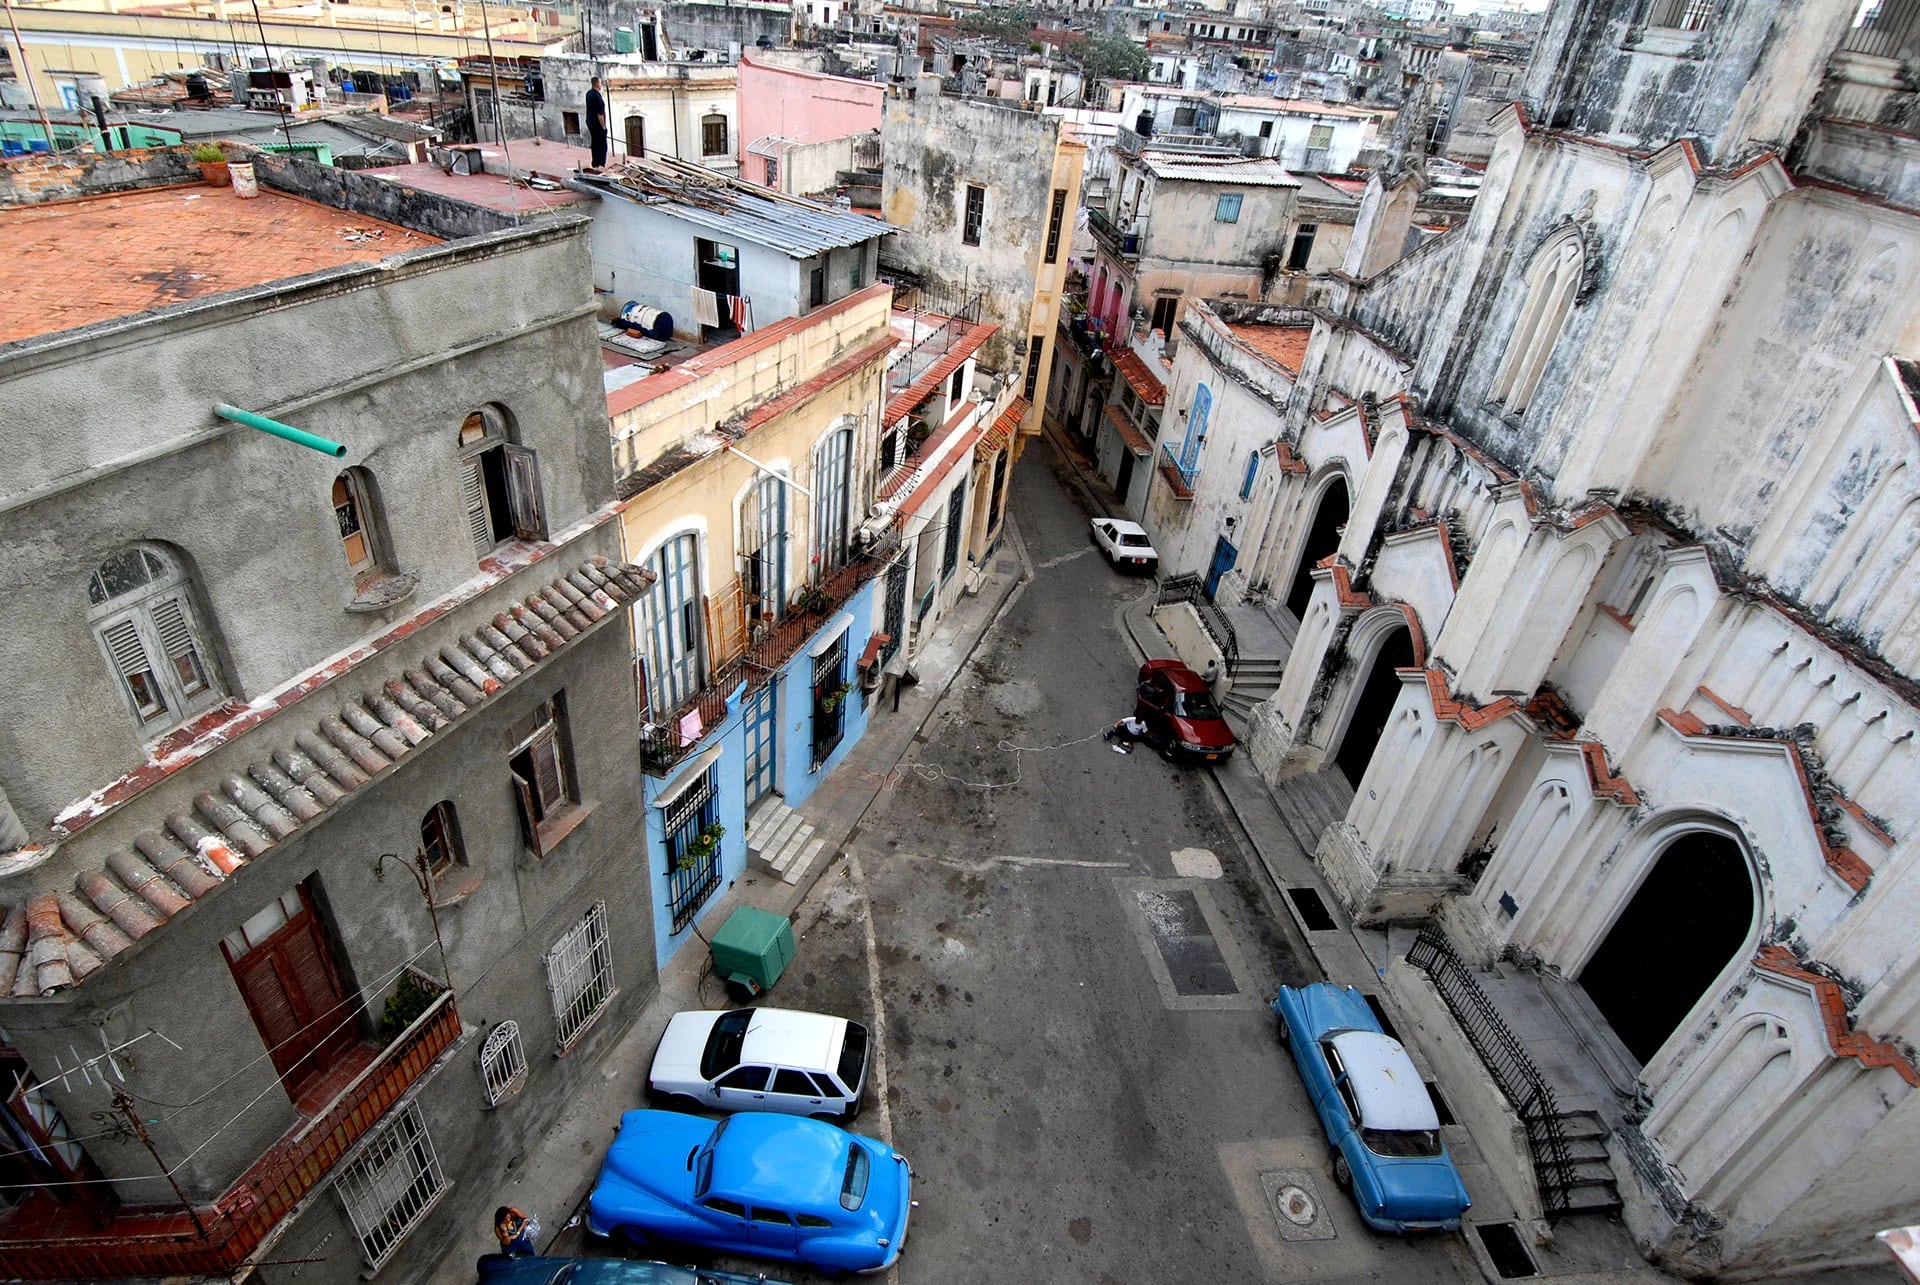 Los autos de la década del 40 y del 50 abundan en las calles de La Habana. Incluso existe un Museo del Auto Antiguo.